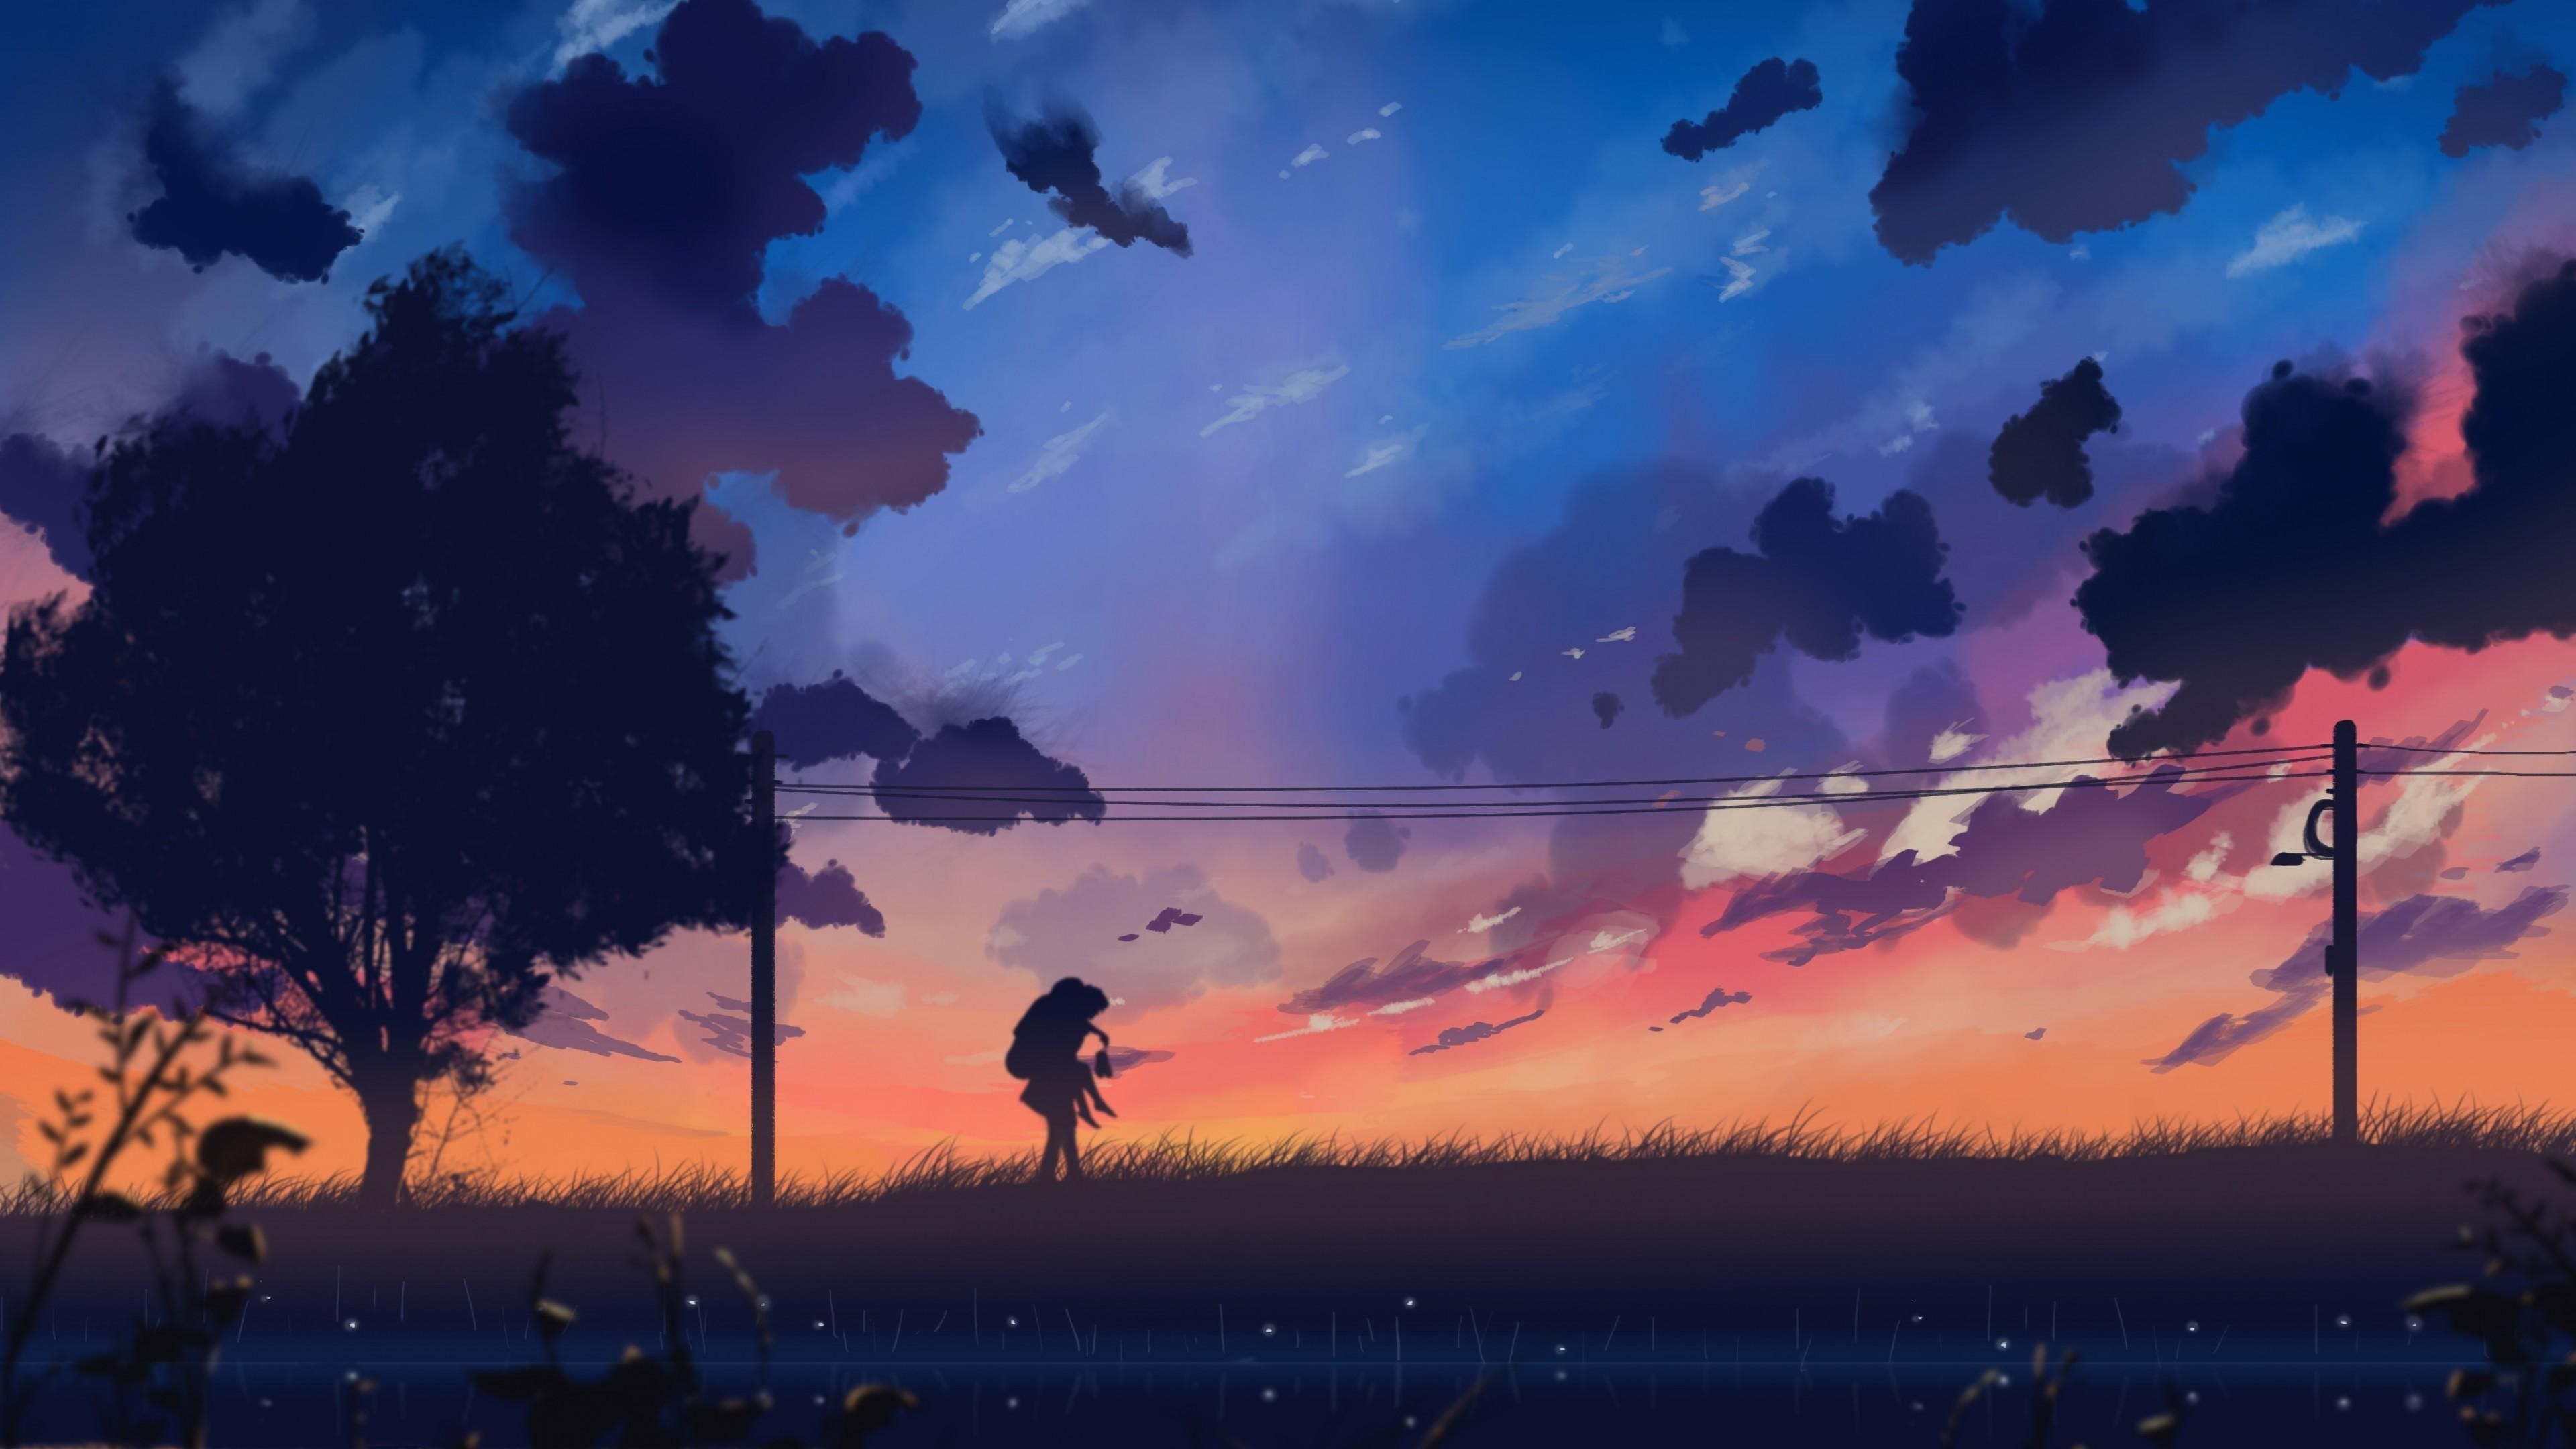 Aesthetic Anime Landscape Wallpaper C09. Landscape wallpaper, Anime scenery, Anime background